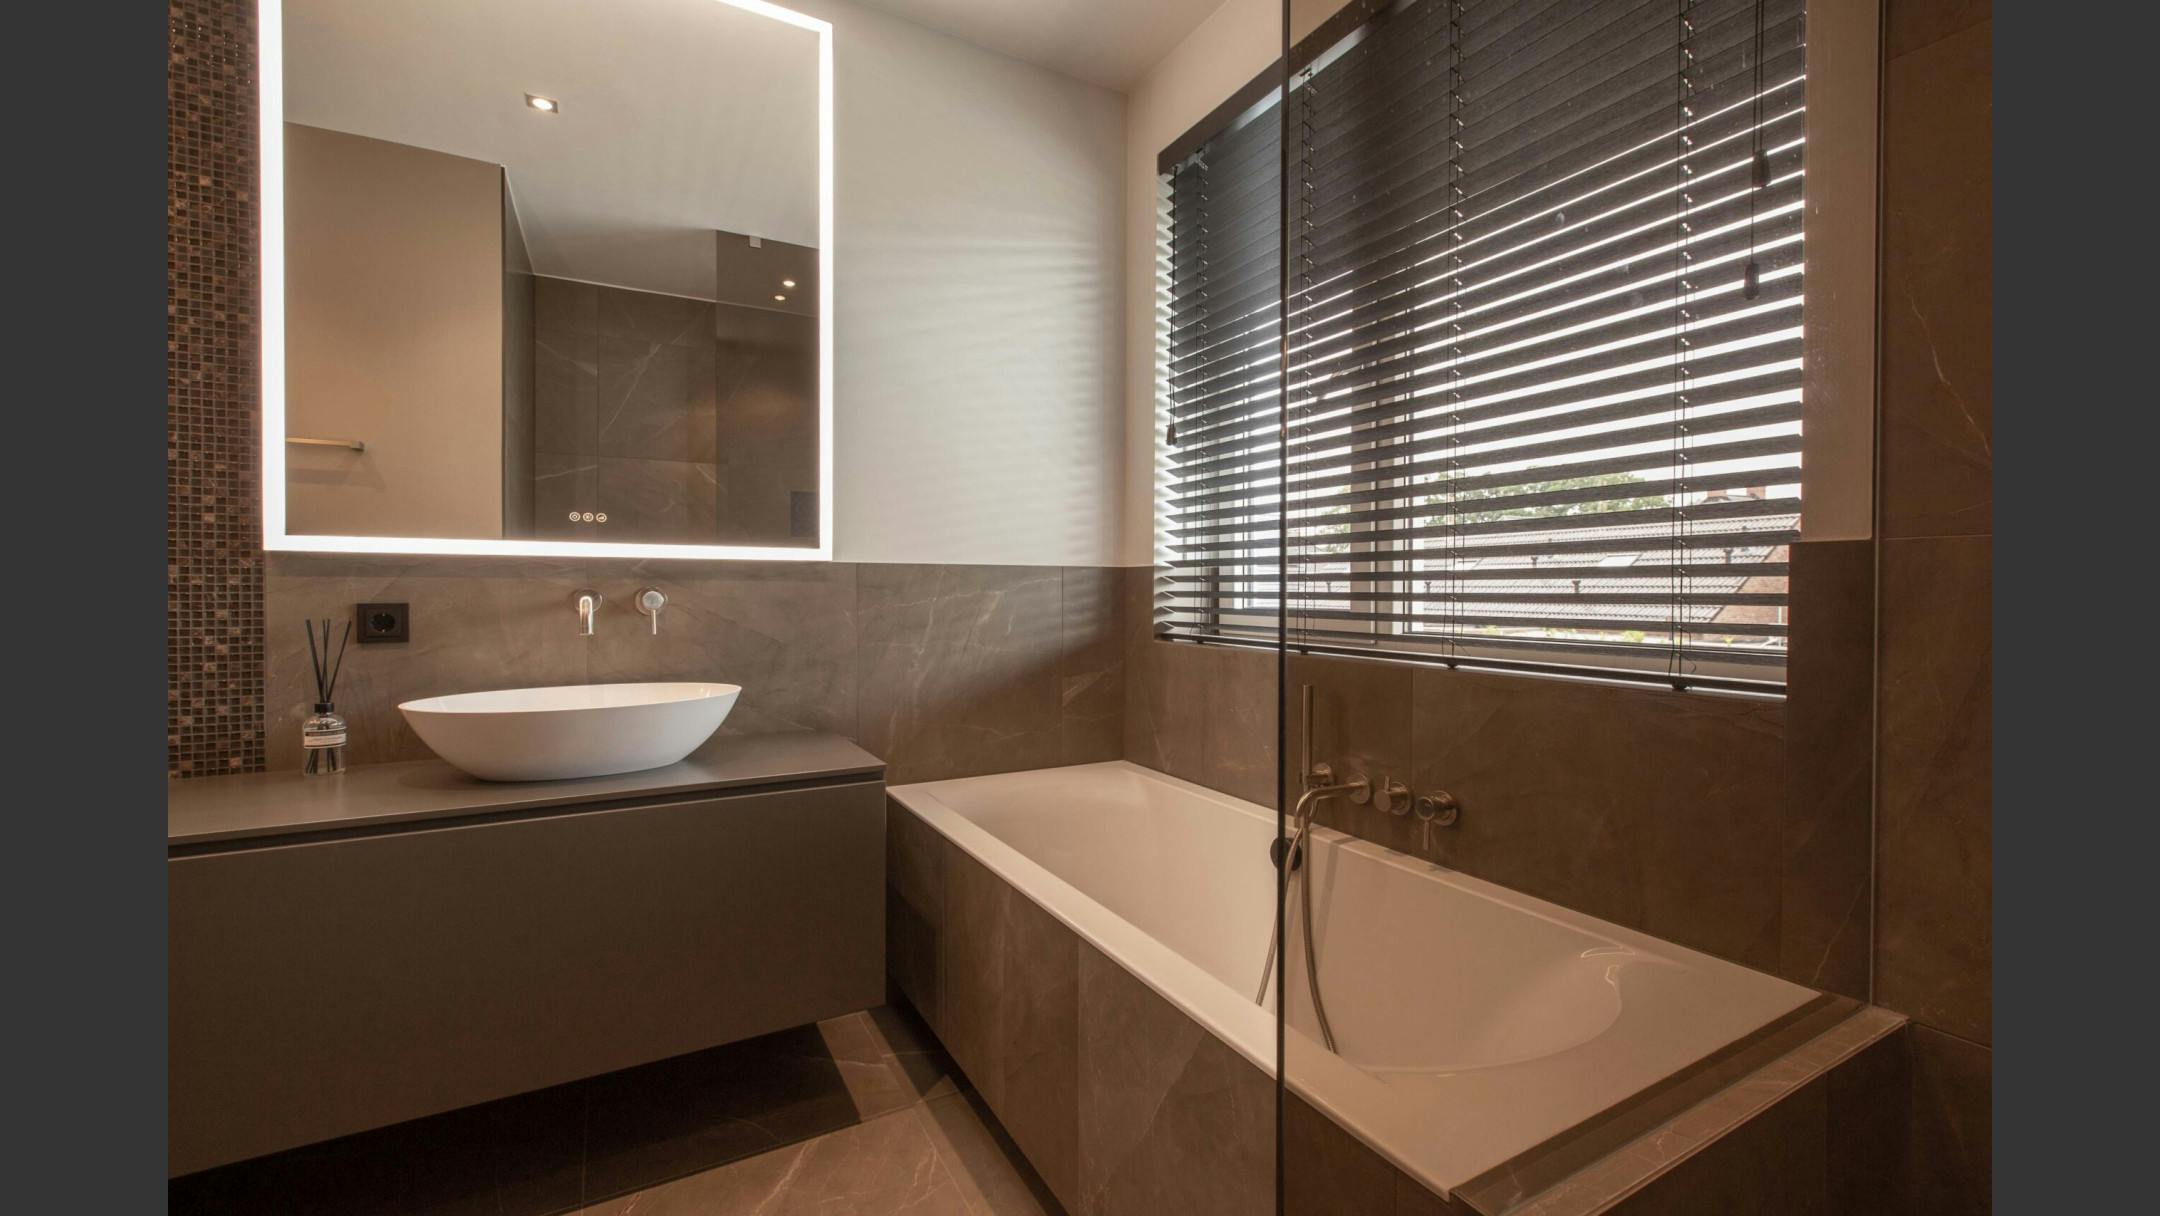 Een bad en wastafel met strakke afwerking voor een luxe moderne uitstraling